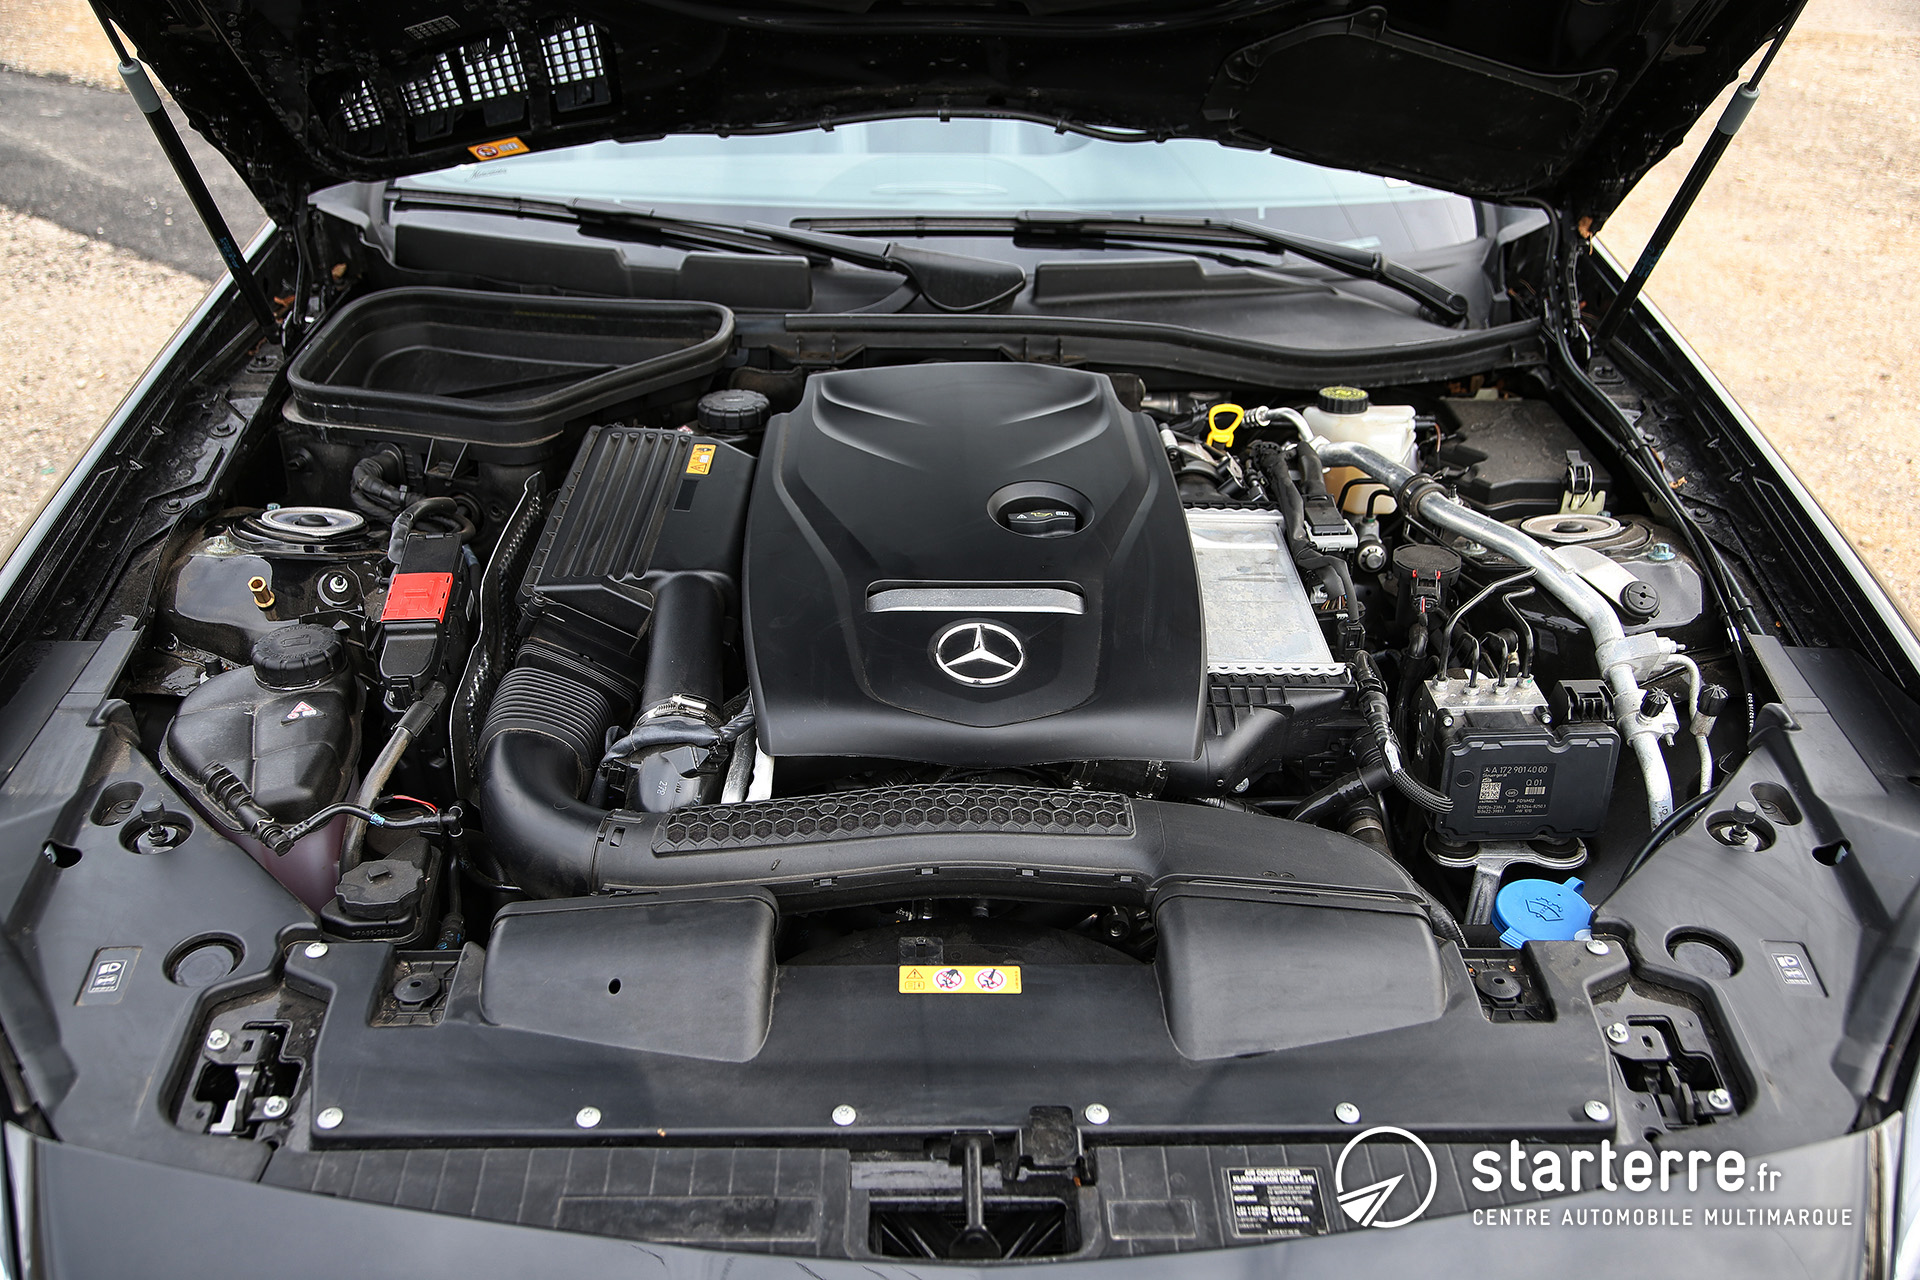 Découverte du coupé-cabriolet Mercedes SLC - Présentation véhicule